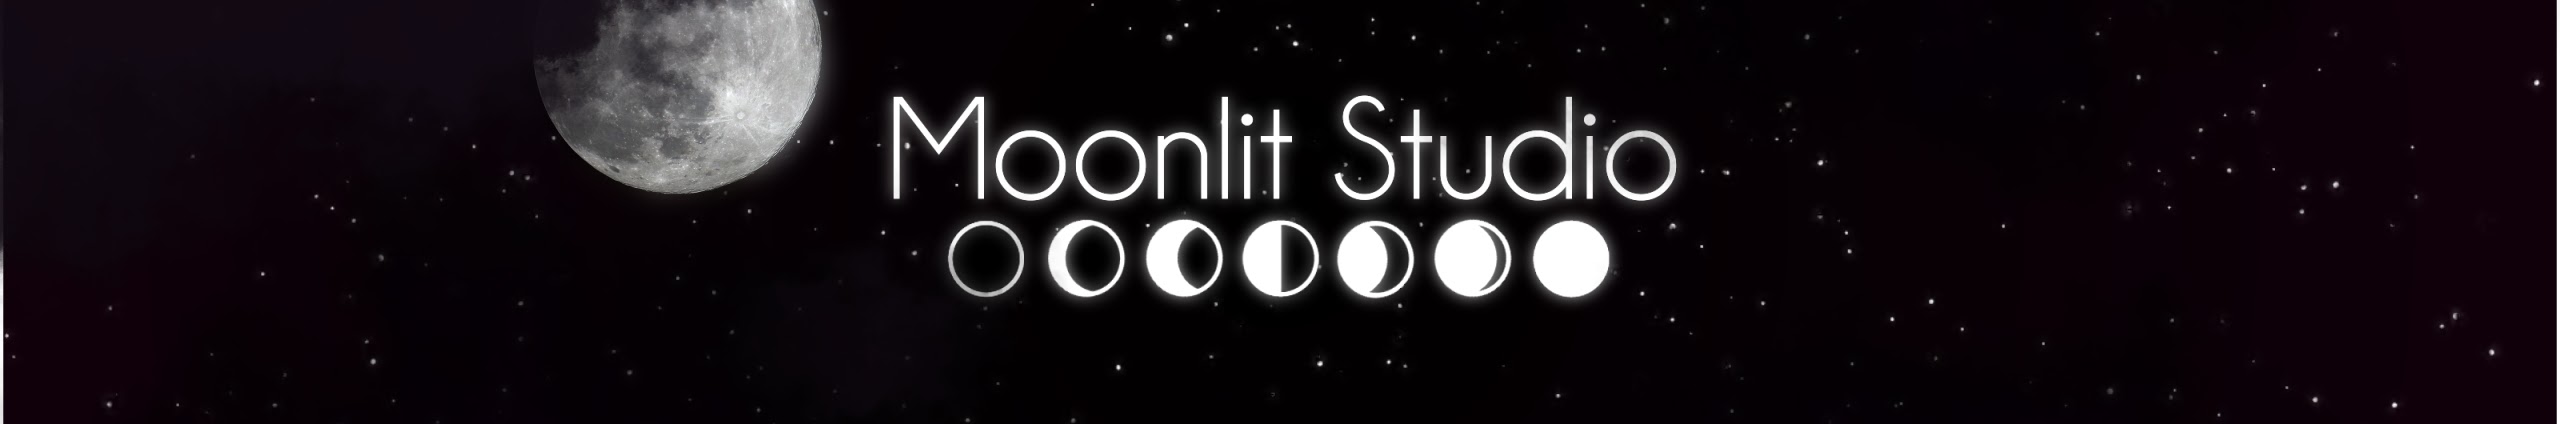 Moonlit Studio